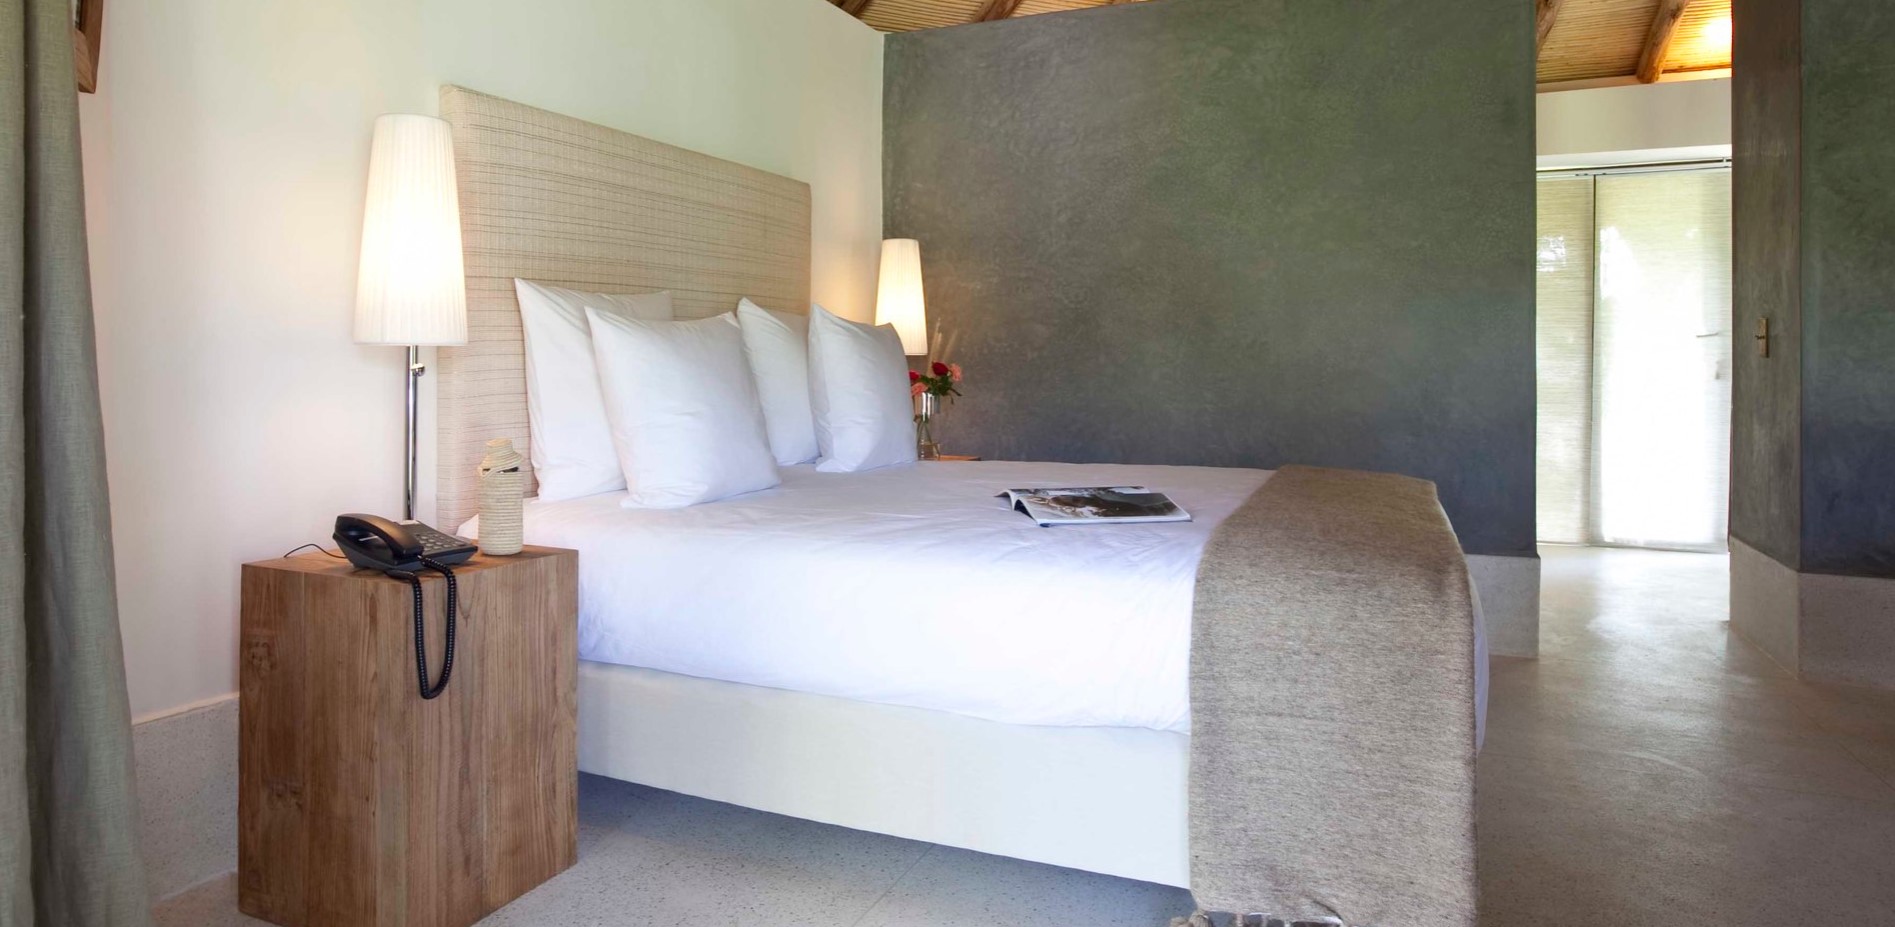 Современный интерьер спальни с нотками марокканского стиля